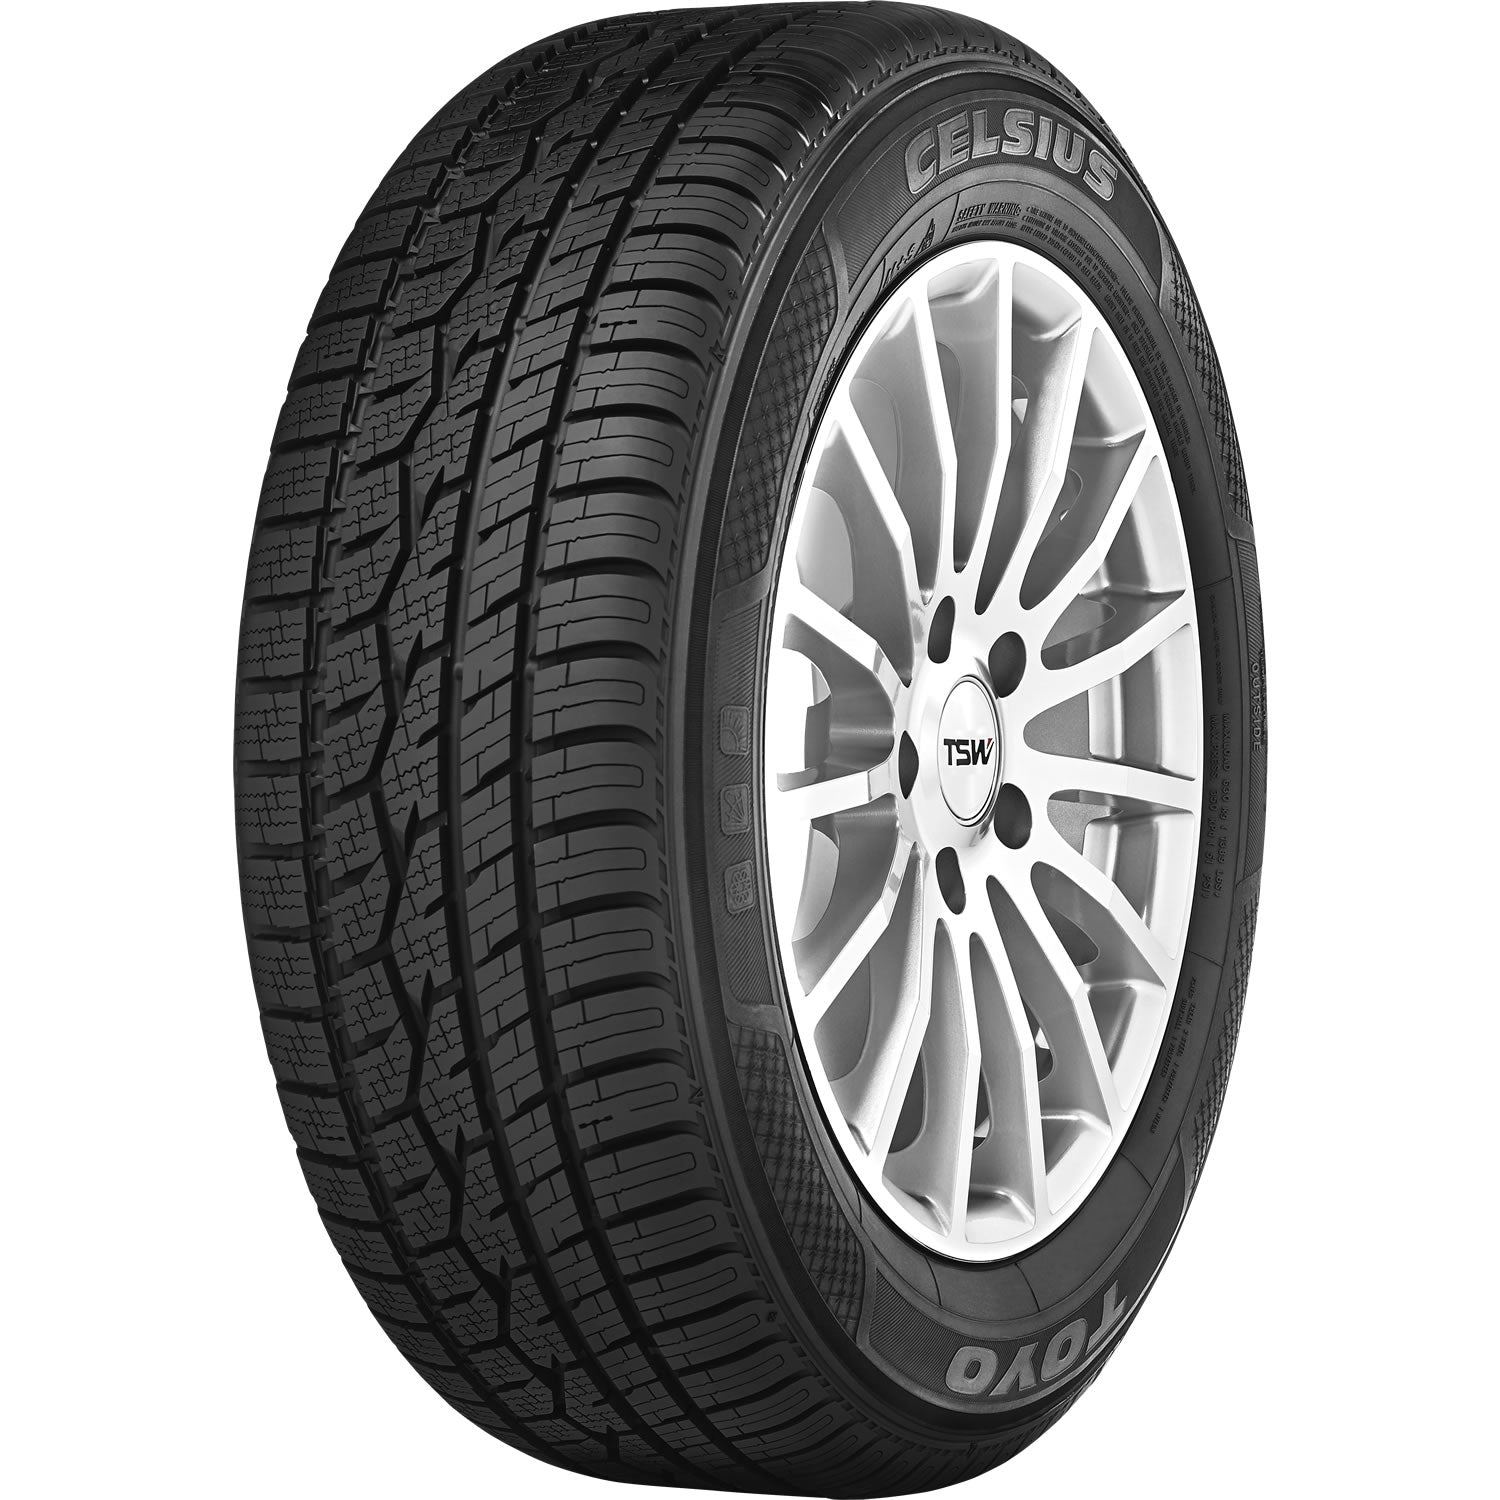 TOYO TIRES CELSIUS 235/75R15 (28.9X9.3R 15) Tires